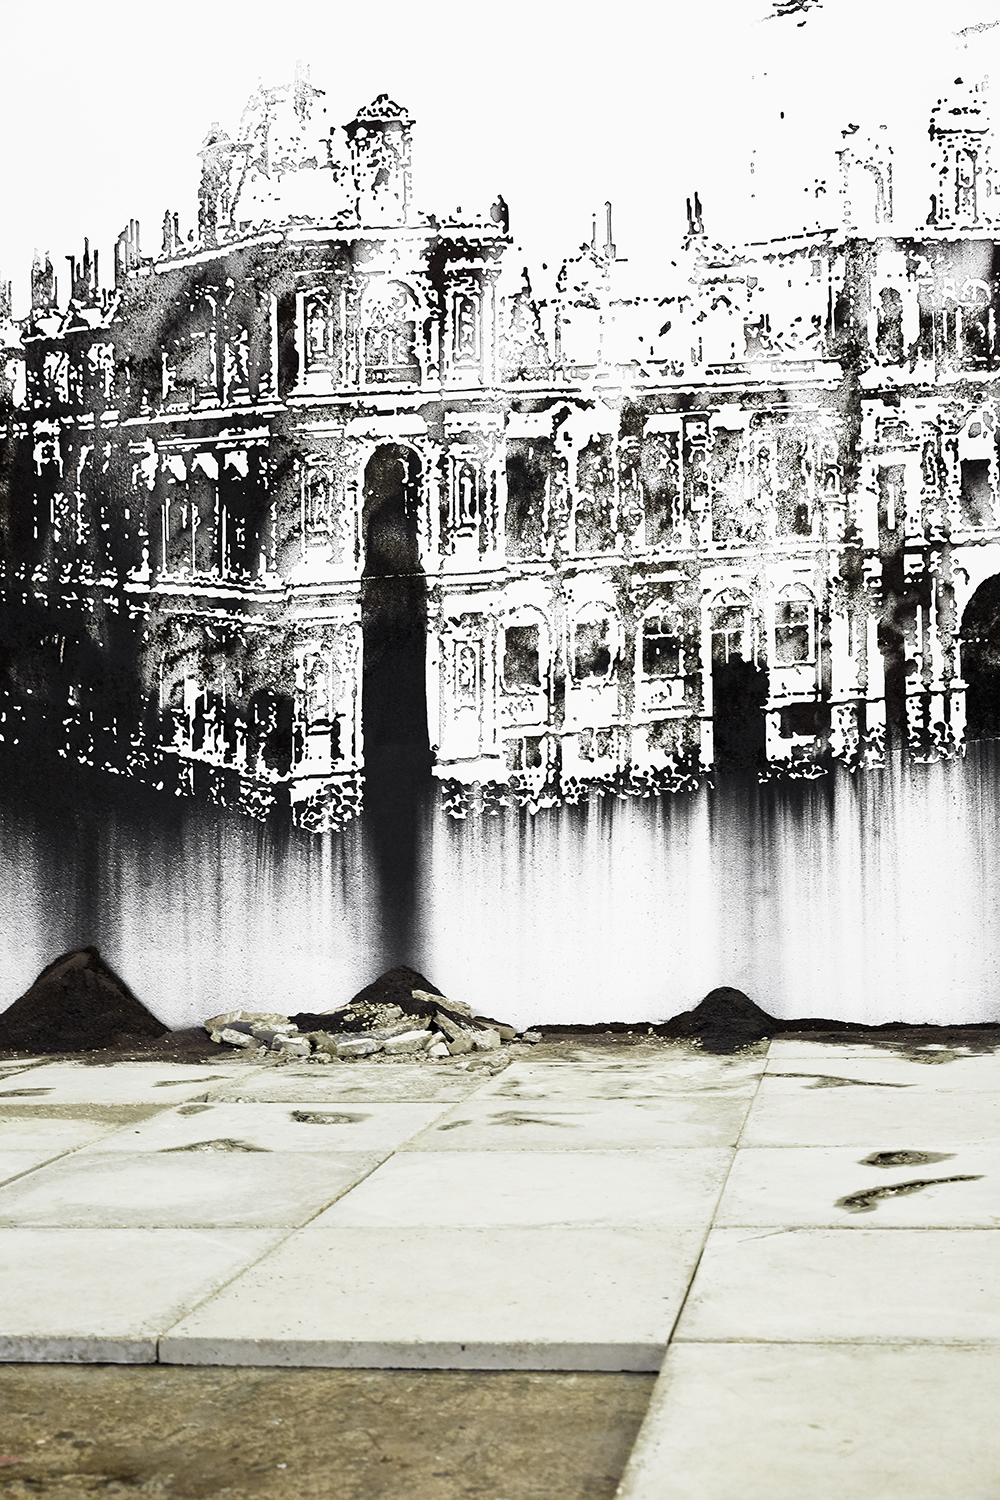 Notre monde brûle, Nicolas Daubanes - L'huile et l'eau (Palais de Tokyo, 2020)